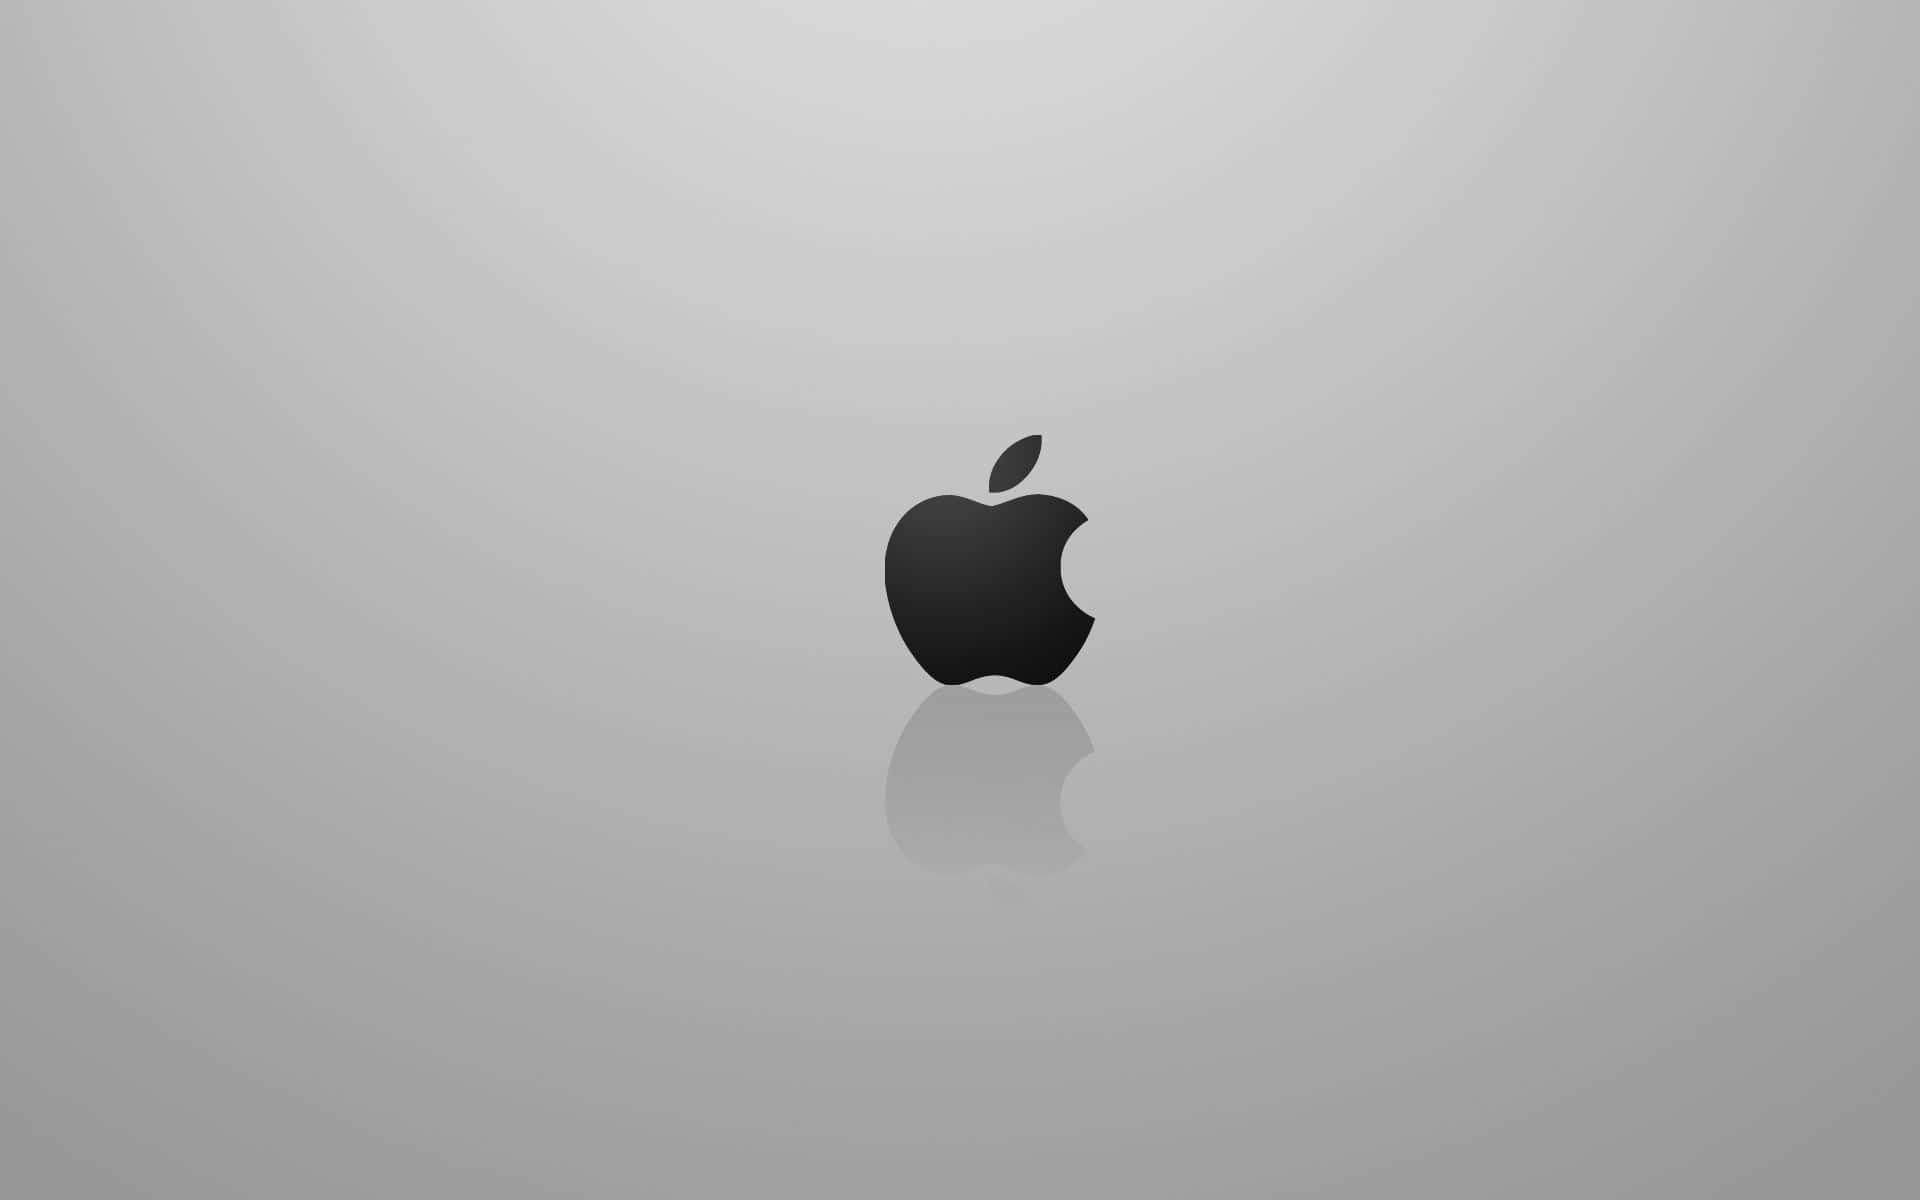 Superfíciereflexiva Para Desktop Do Apple Mac. Papel de Parede